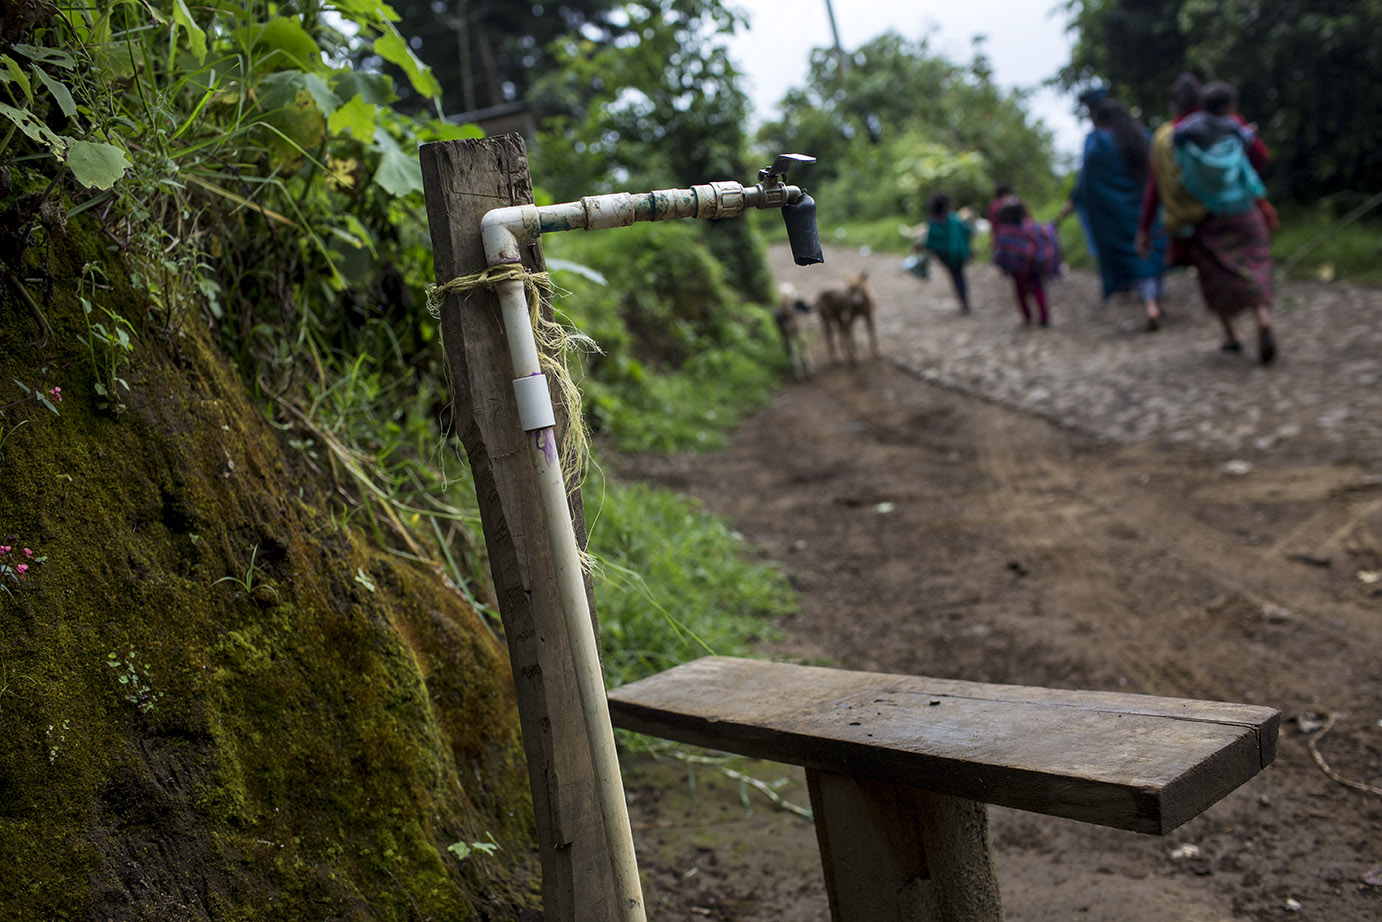 Uno de los muchos grifos públicos presentes en Vuelta Grande, aldea de la Antigua Guatemala. Según los comunitarios, la mayoría de las veces están secos. Simone Dalmasso